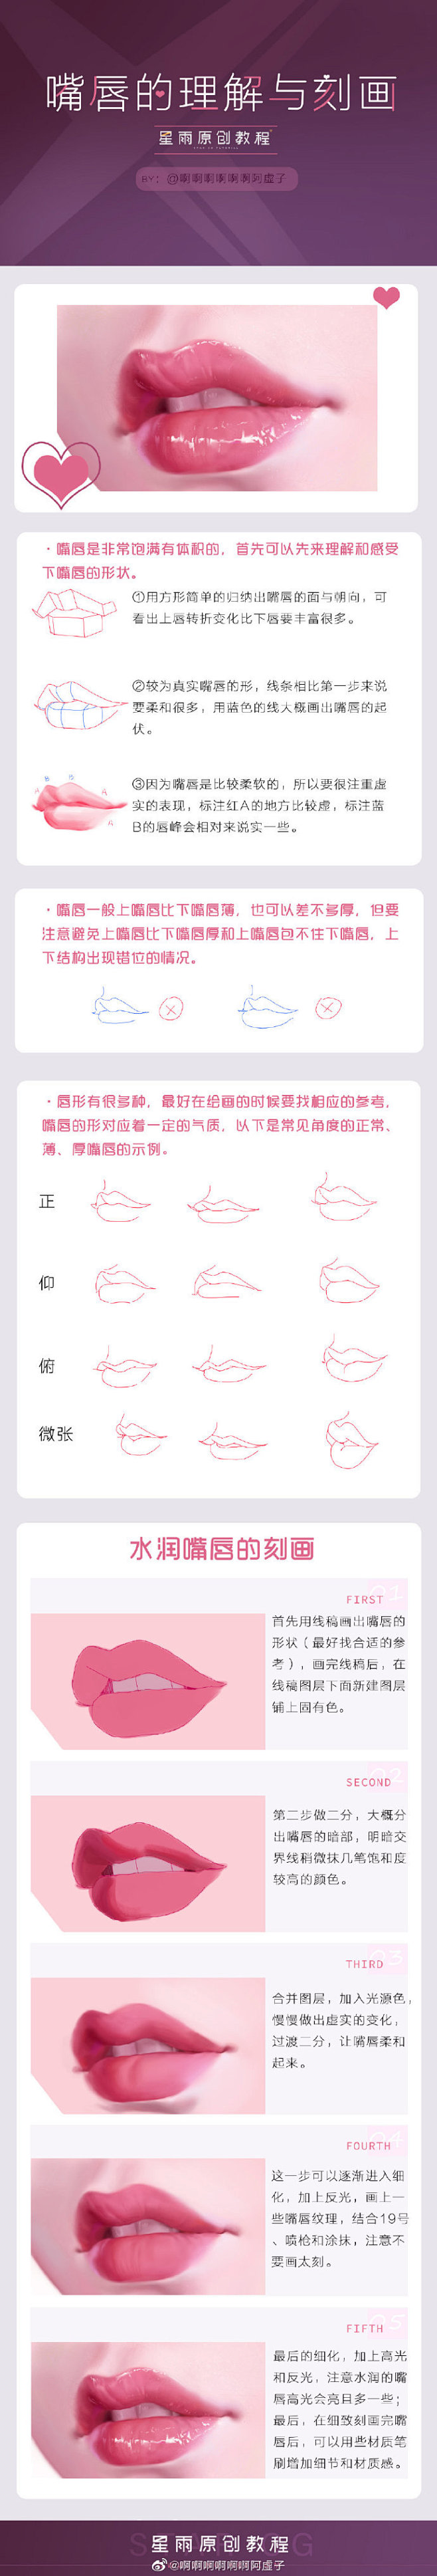 分享一个如何画嘴唇的小教程@星雨CG艺术...